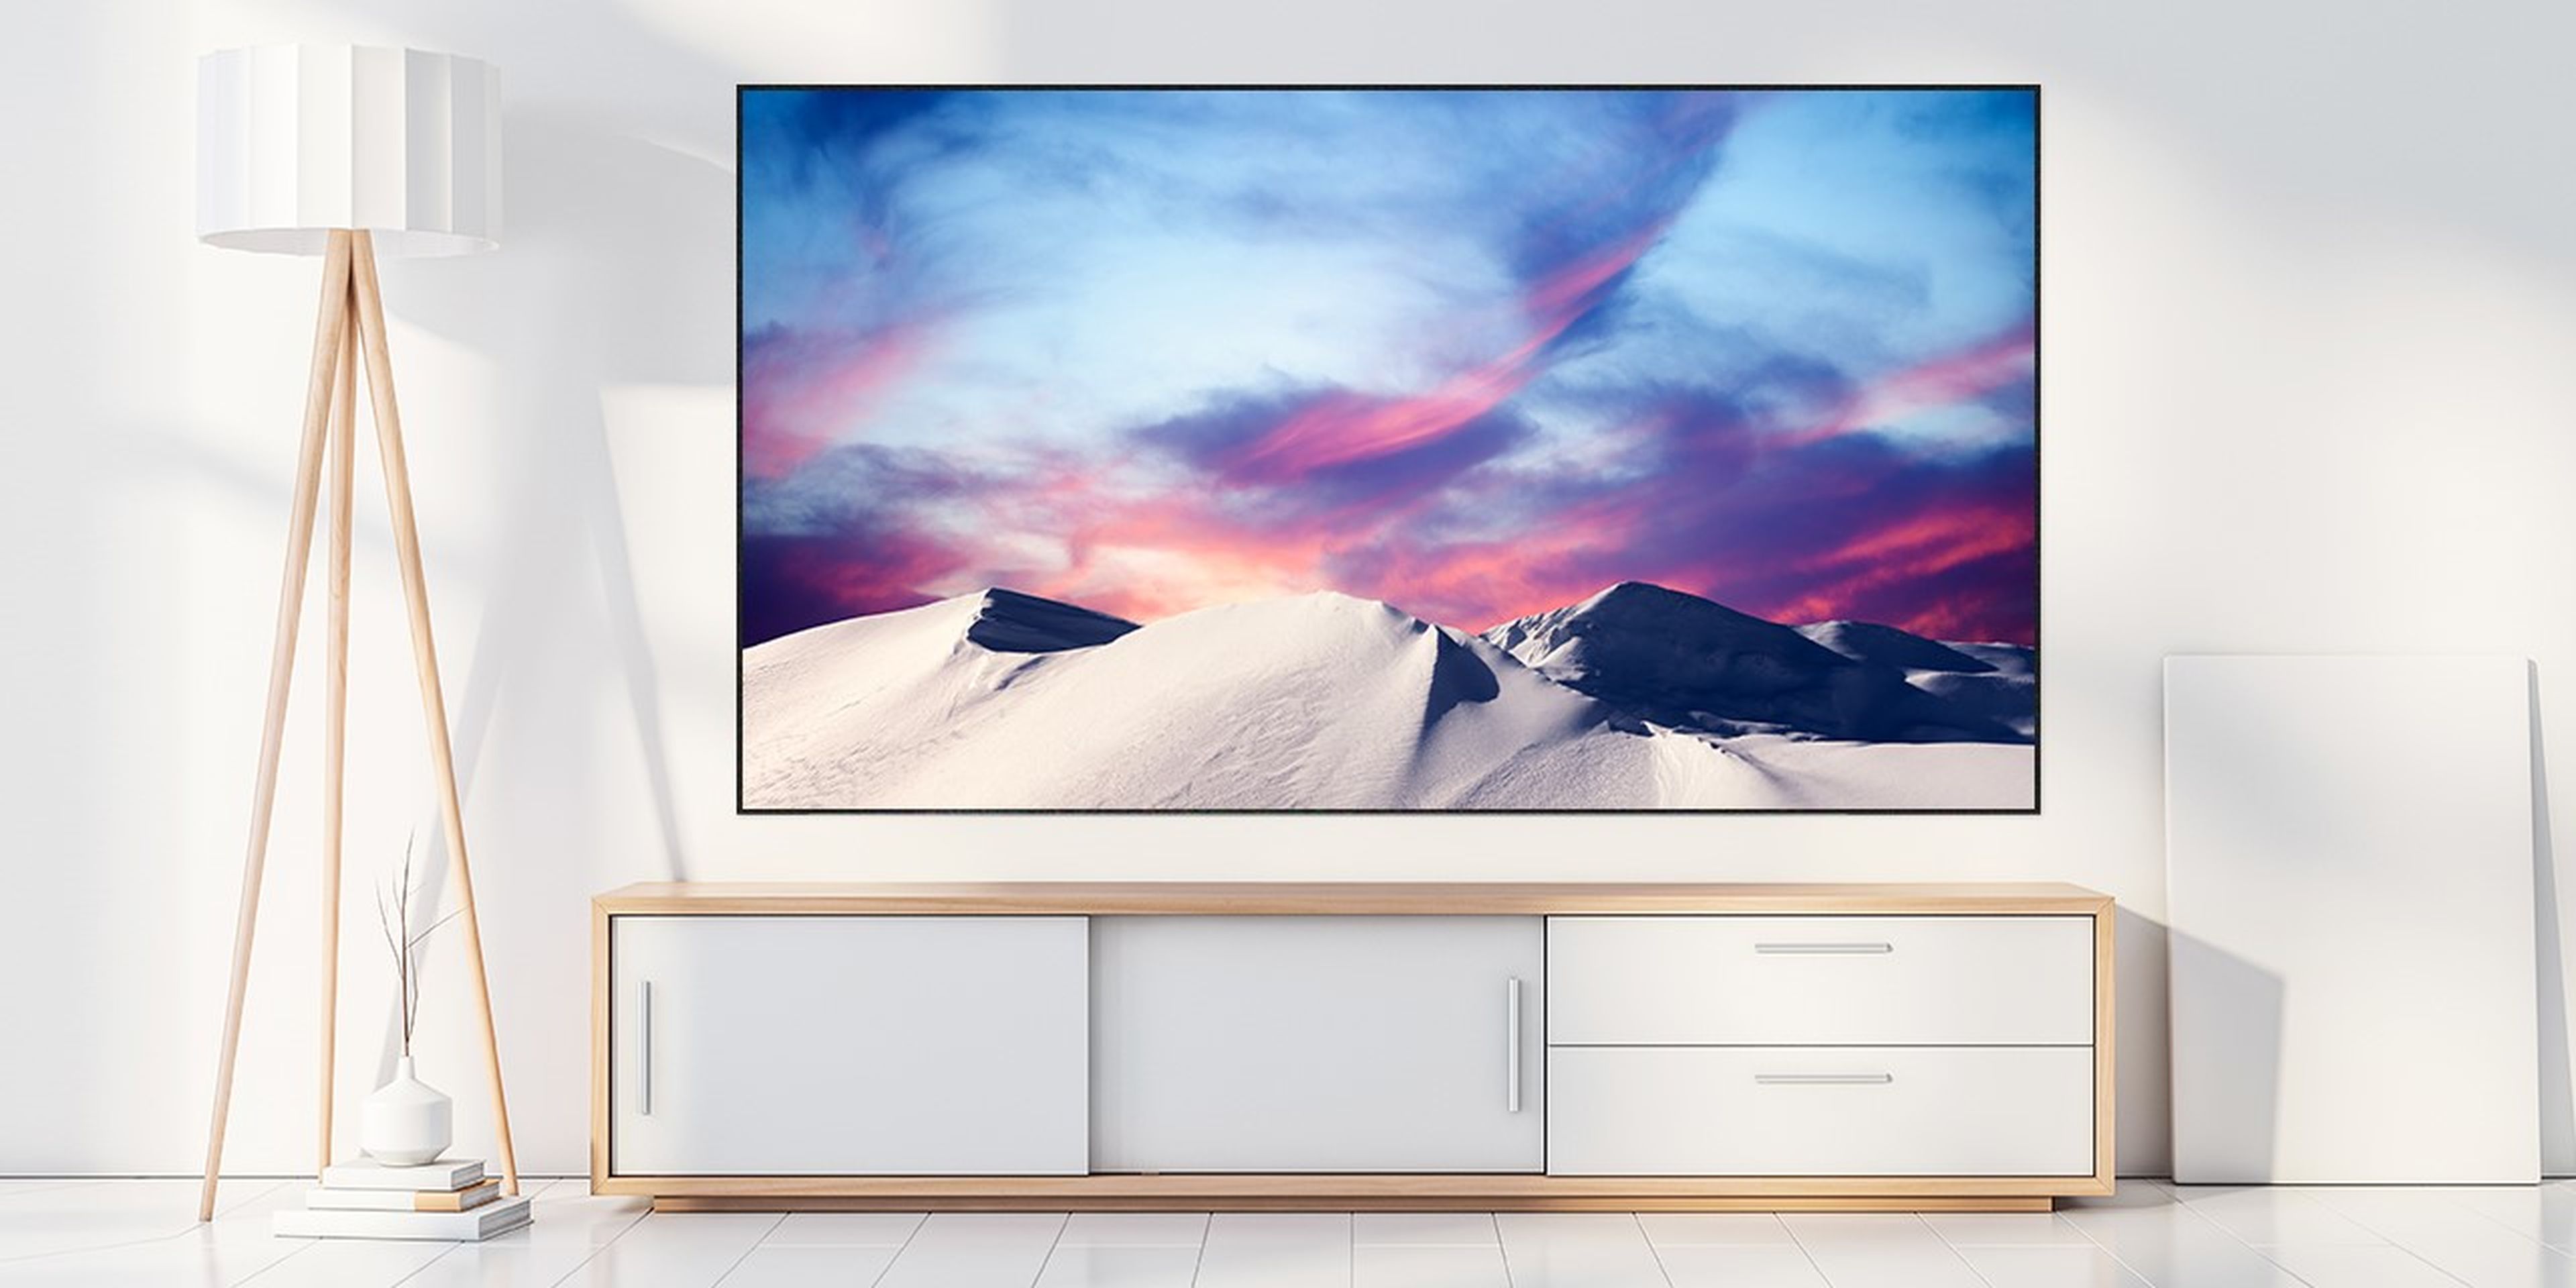 Реклама телевизора xiaomi. LG OLED 8k. LG 8k телевизор. Телевизор Xiaomi 8k. Телевизор Xiaomi 55 8k.